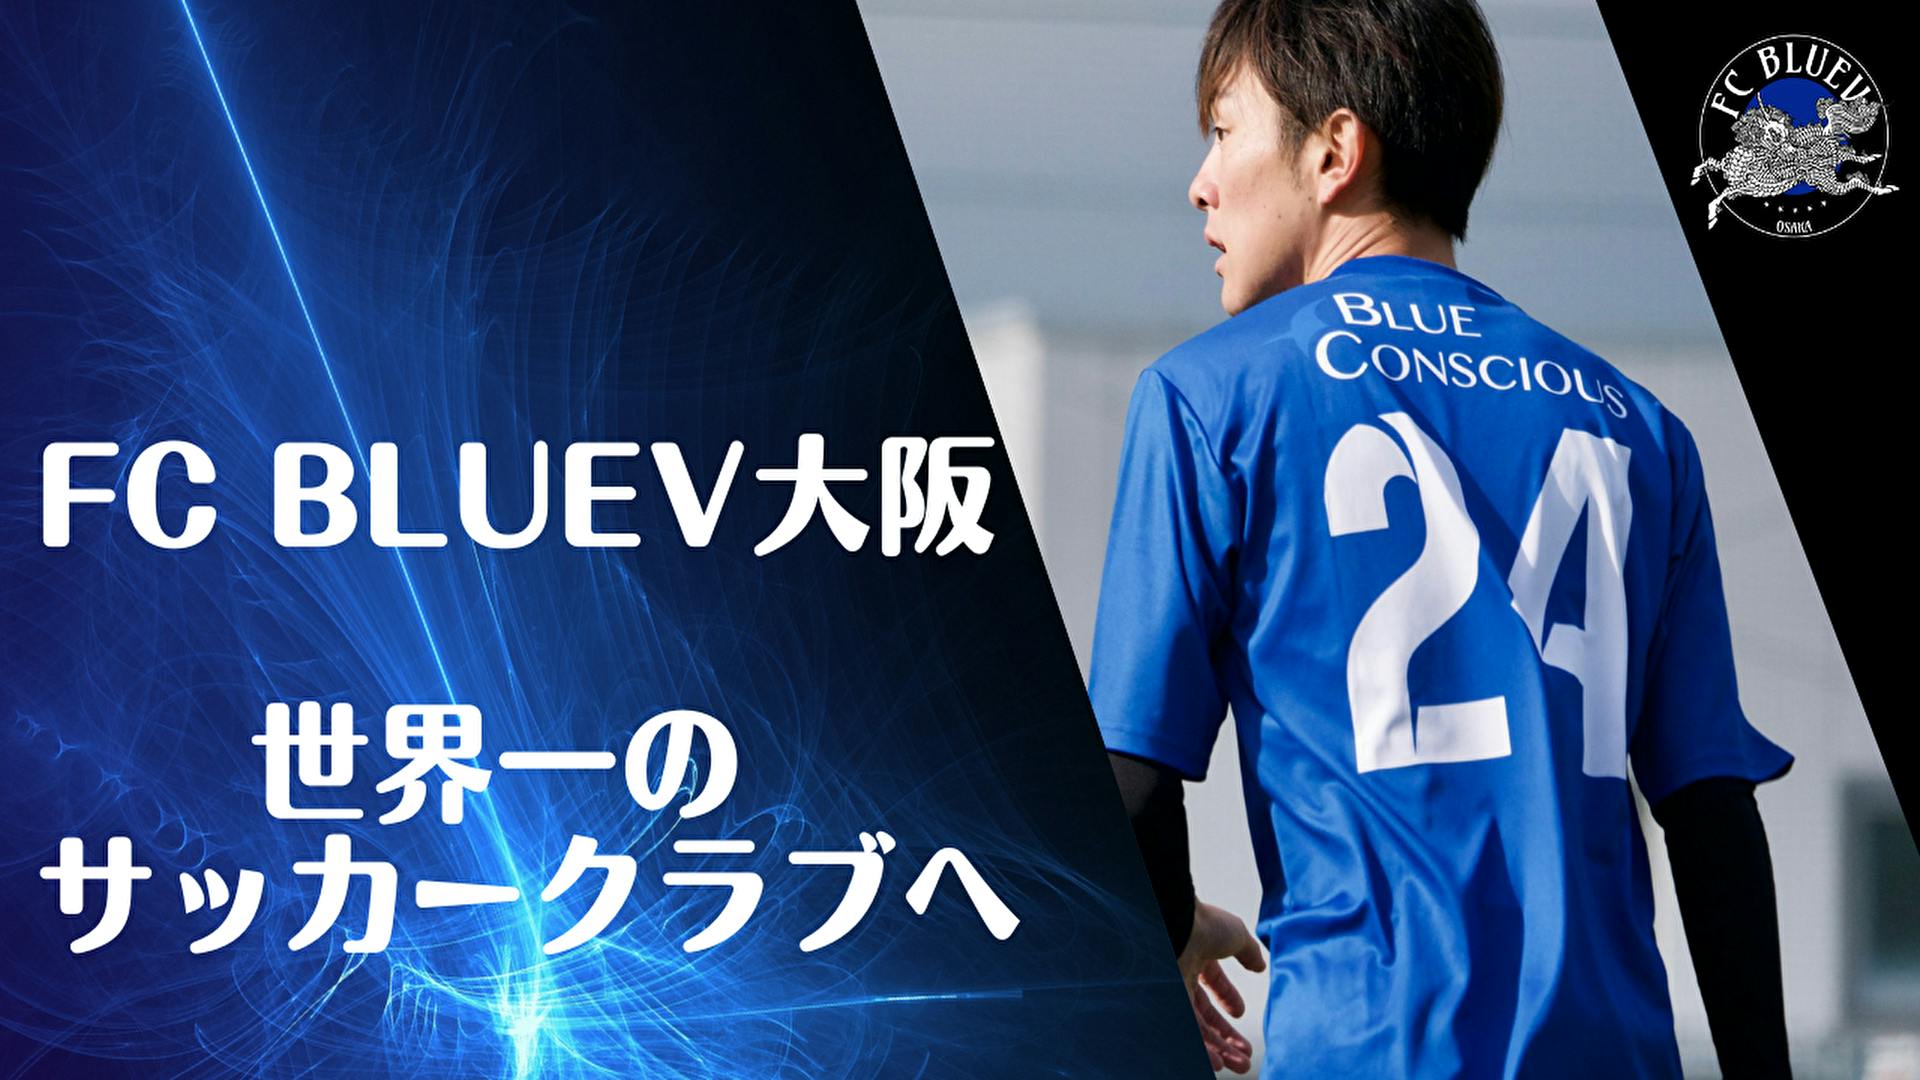 Fc Bluev大阪 Fc Bluev 大阪 世界一のサッカークラブへ Dmmオンラインサロン